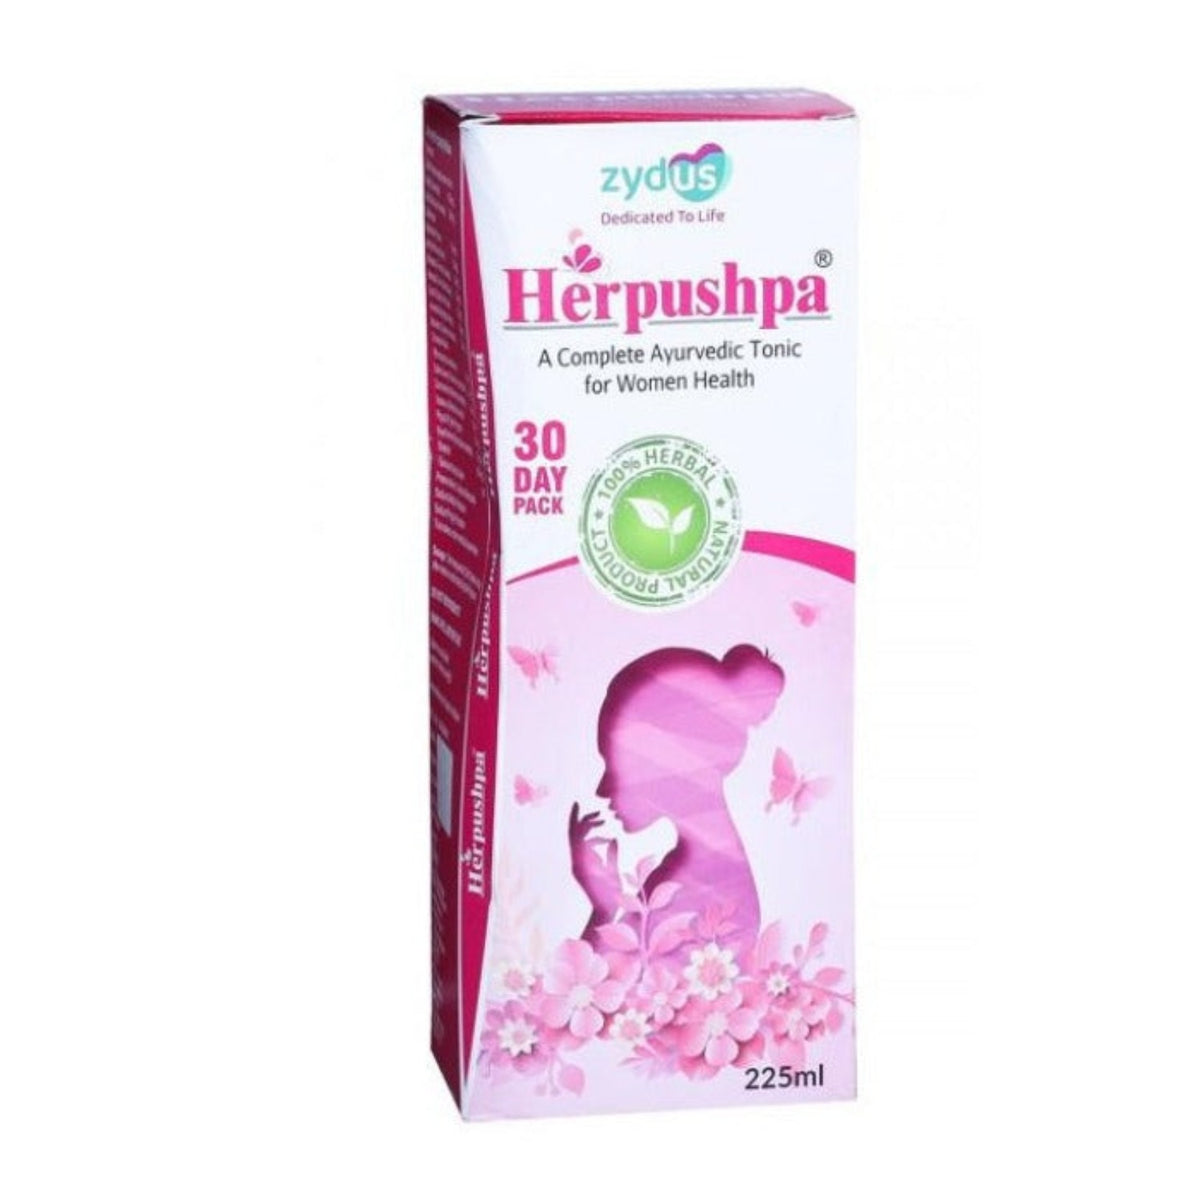 Zydus Herpushpa, ein komplettes ayurvedisches Tonikum für die Gesundheit von Frauen, flüssig, 225 ml